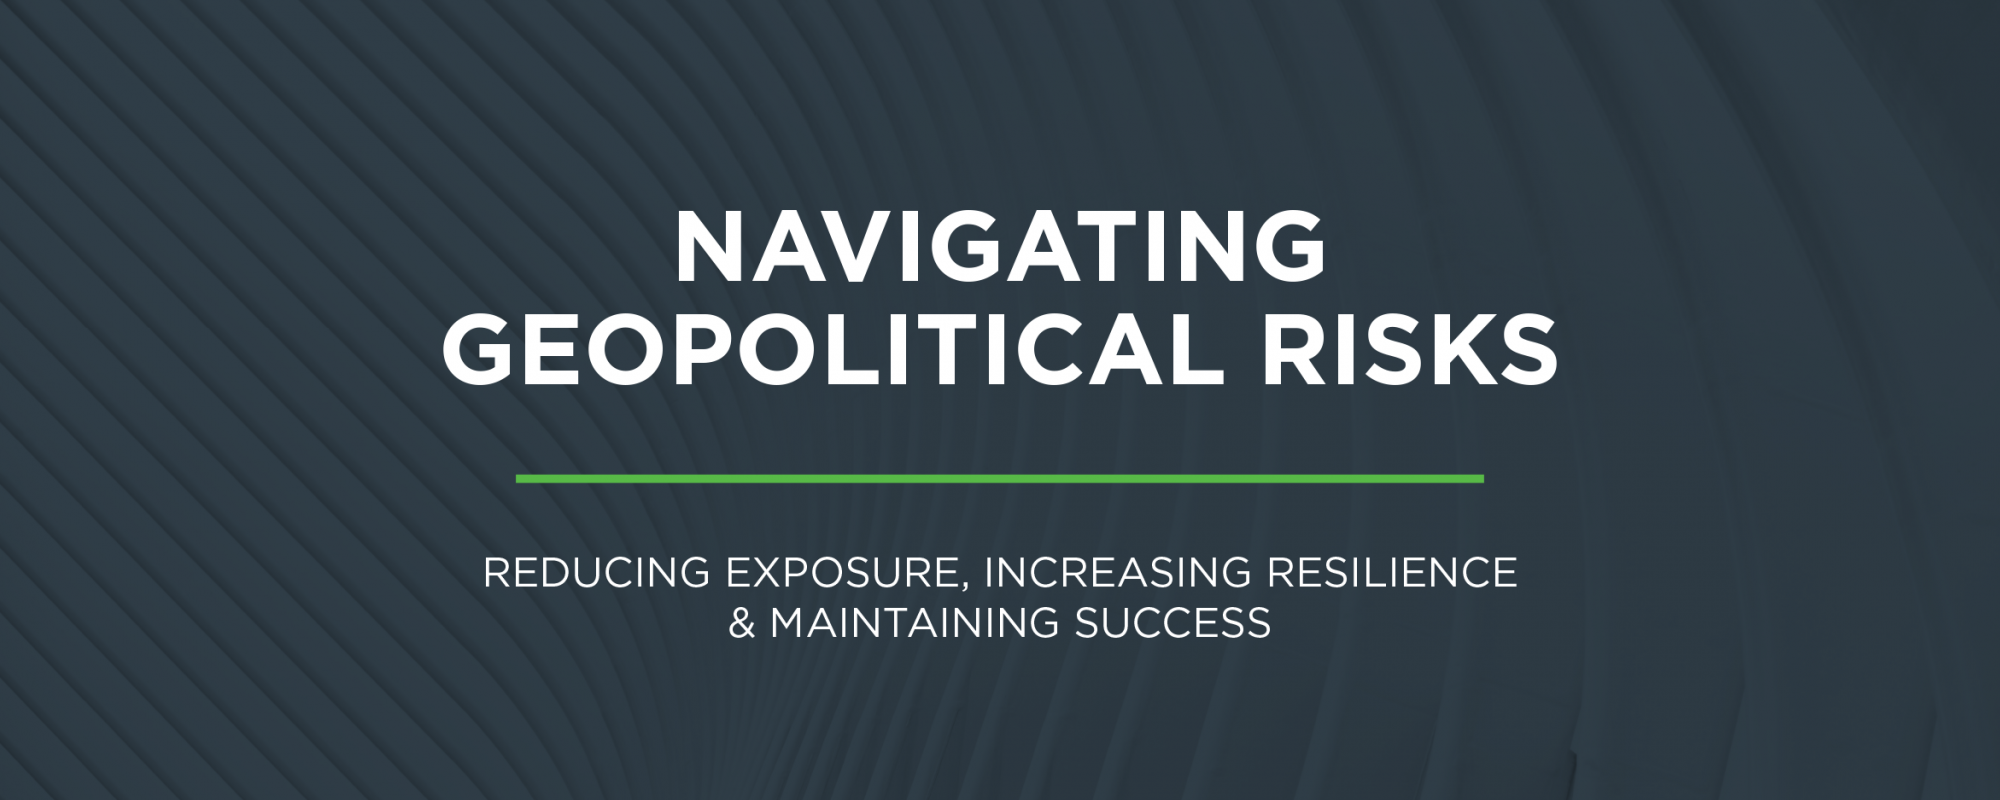 Navigating Geopolitical Risks